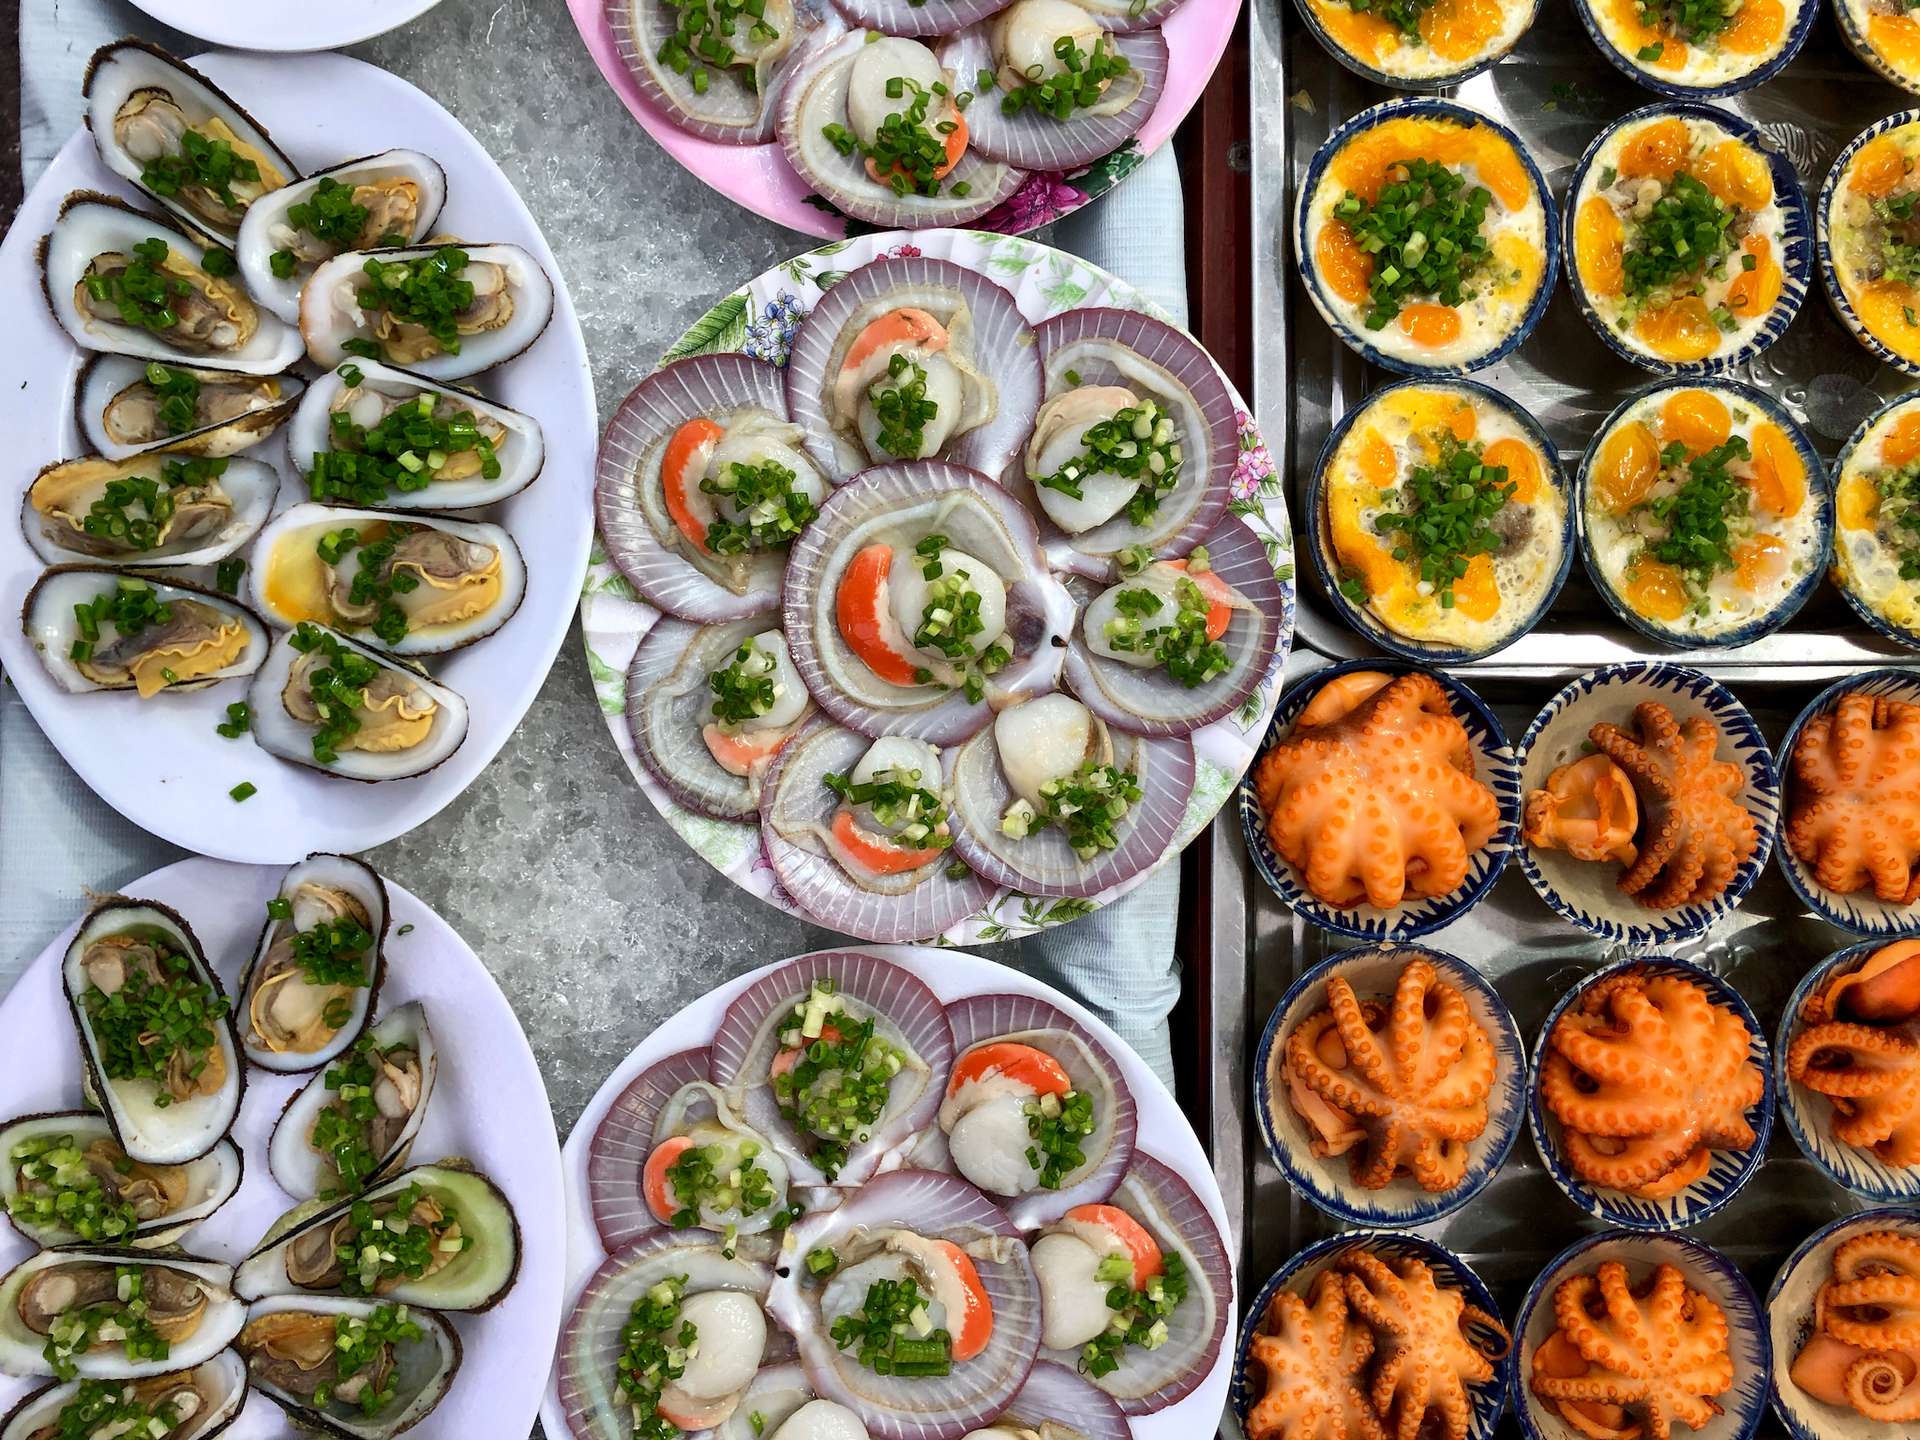 Chợ hải sản Côn Đảo có những đặc điểm gì?
